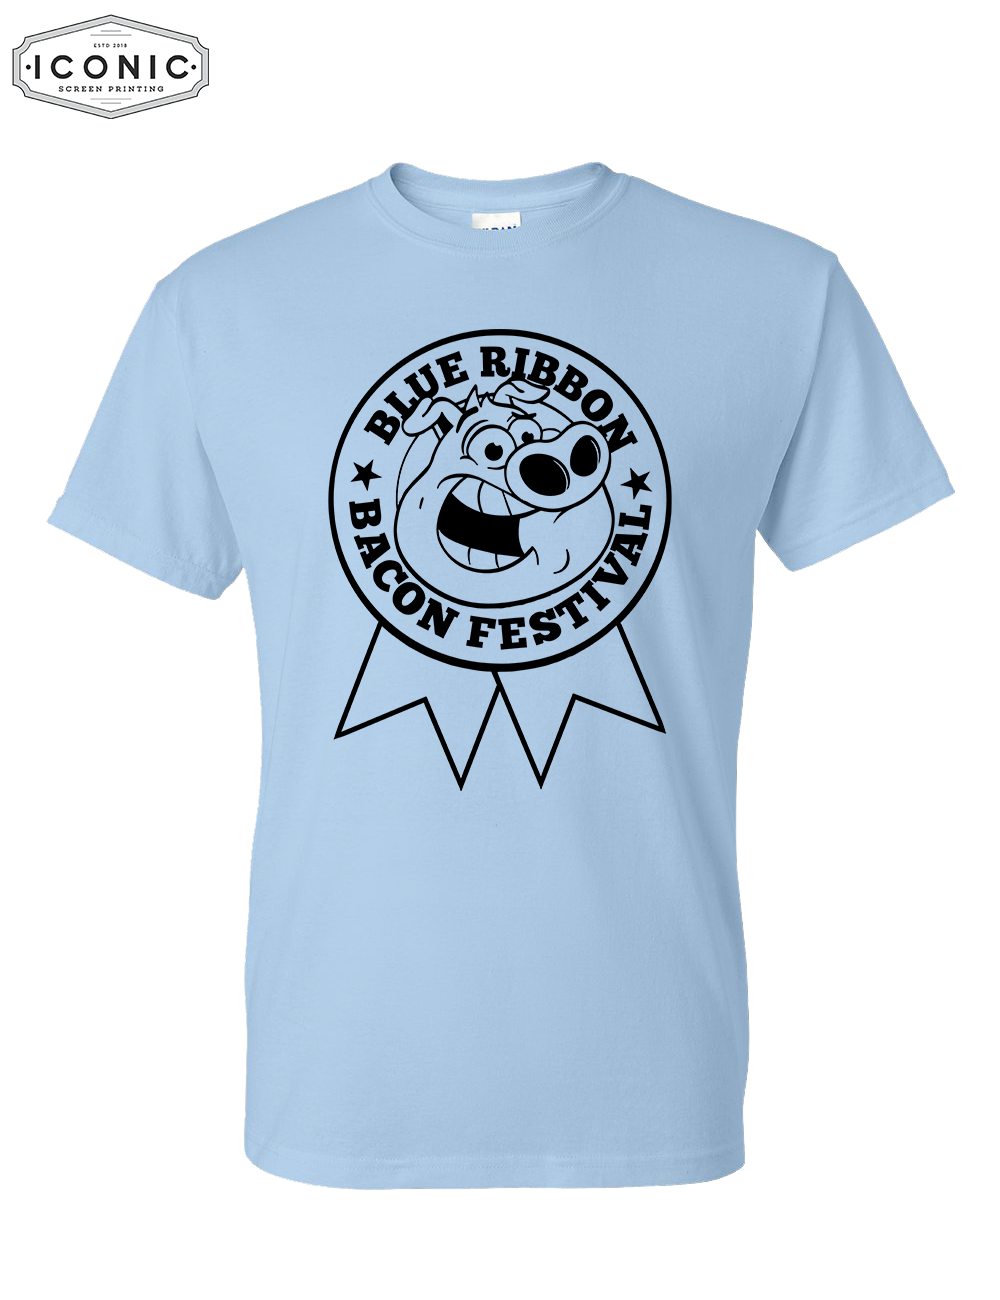 Des Moines Bacon Fest - DryBlend T-Shirt